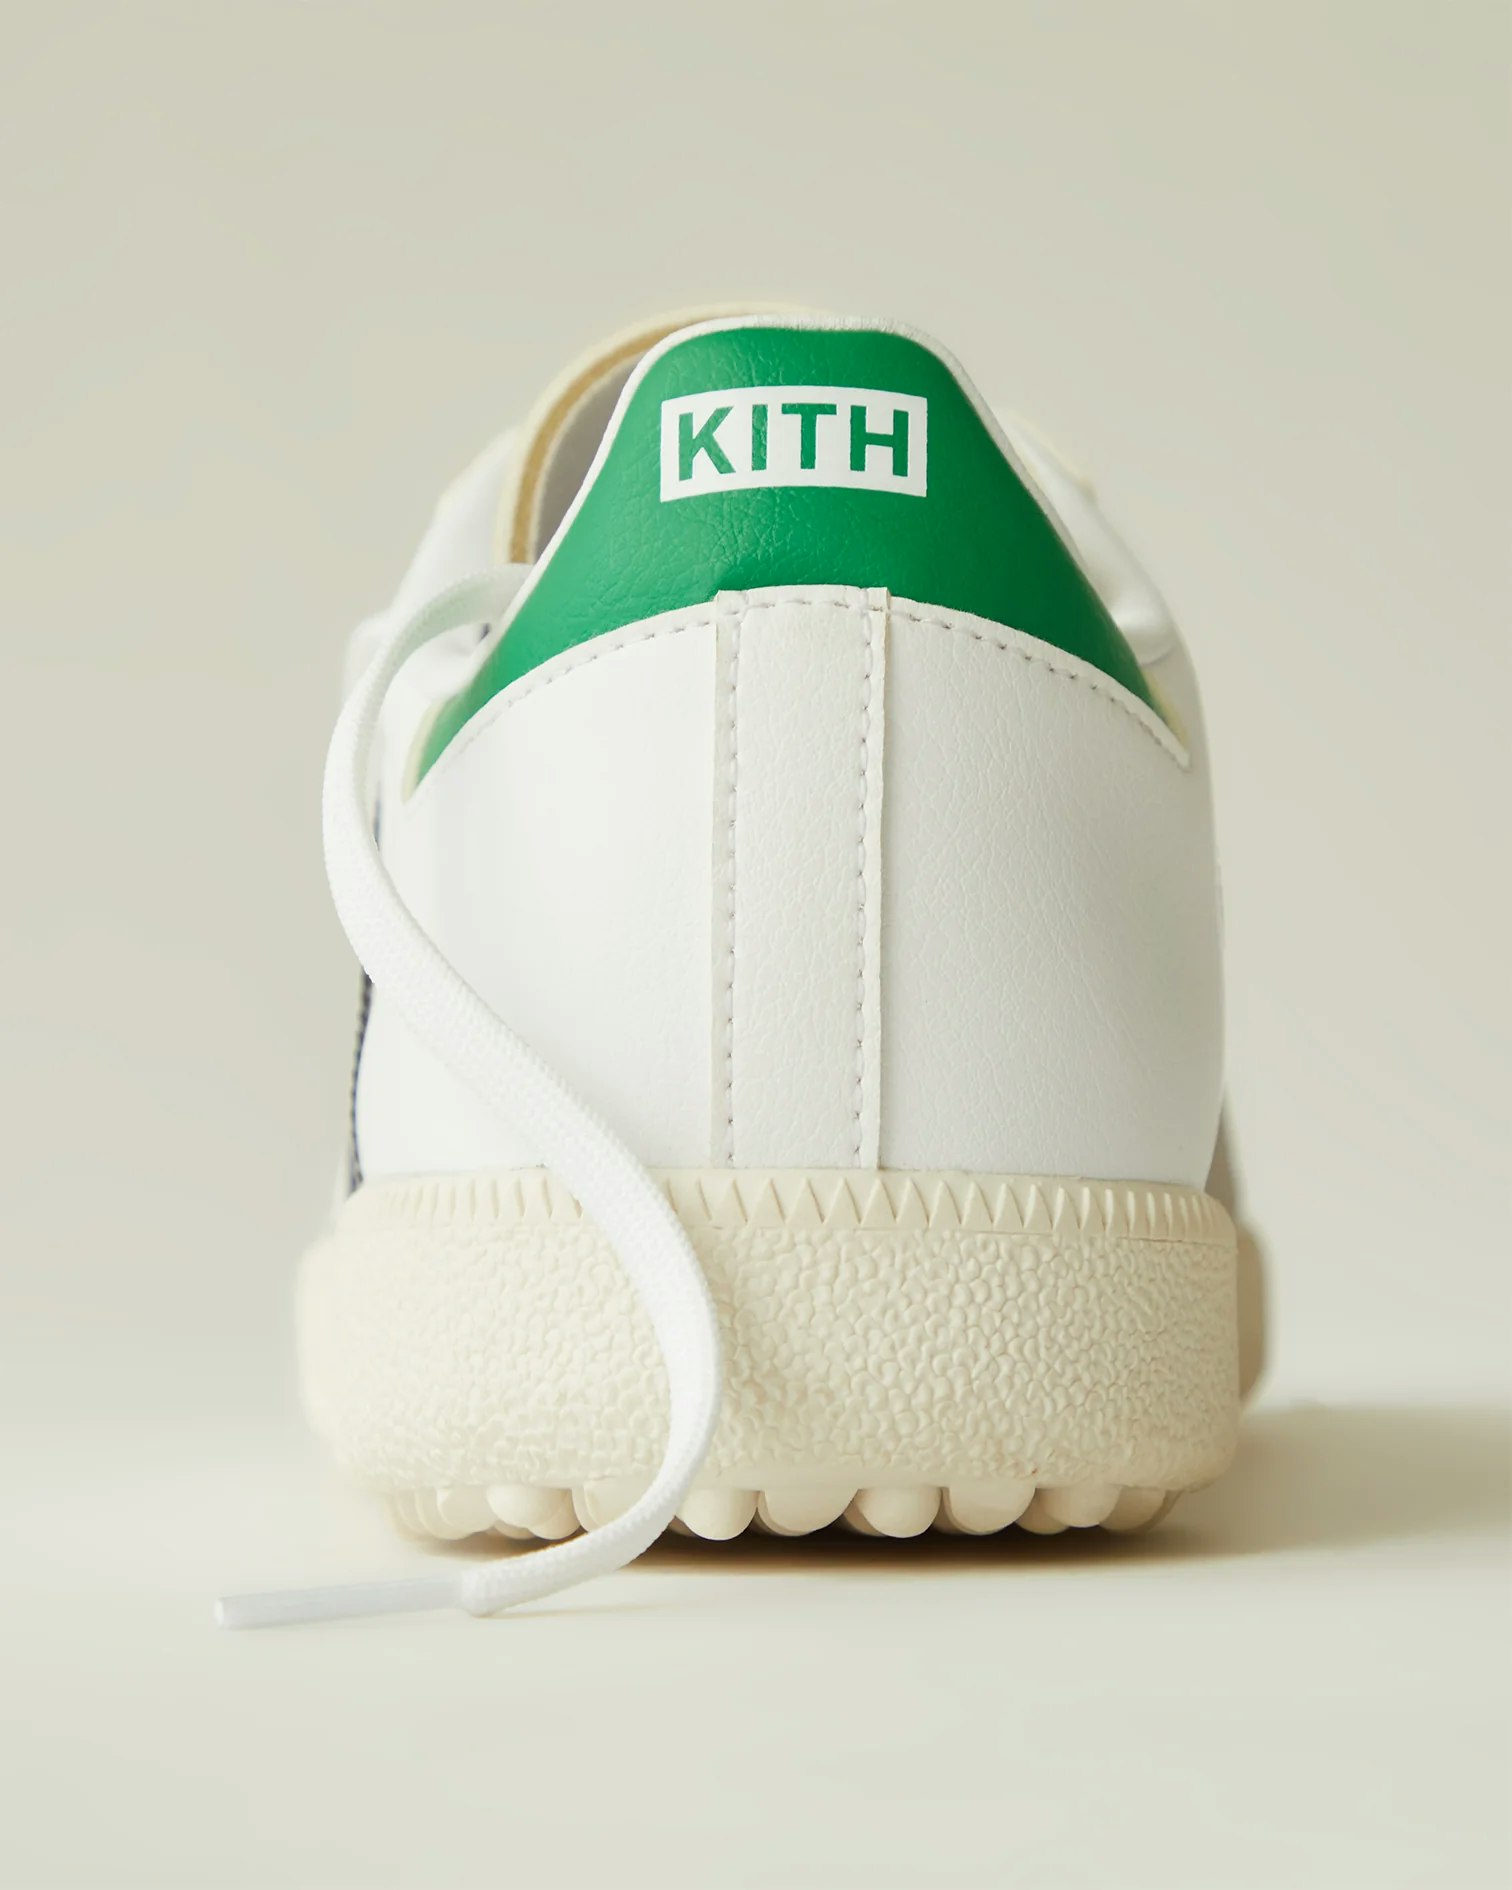 Kith x adidas Samba Golf "White/Green"